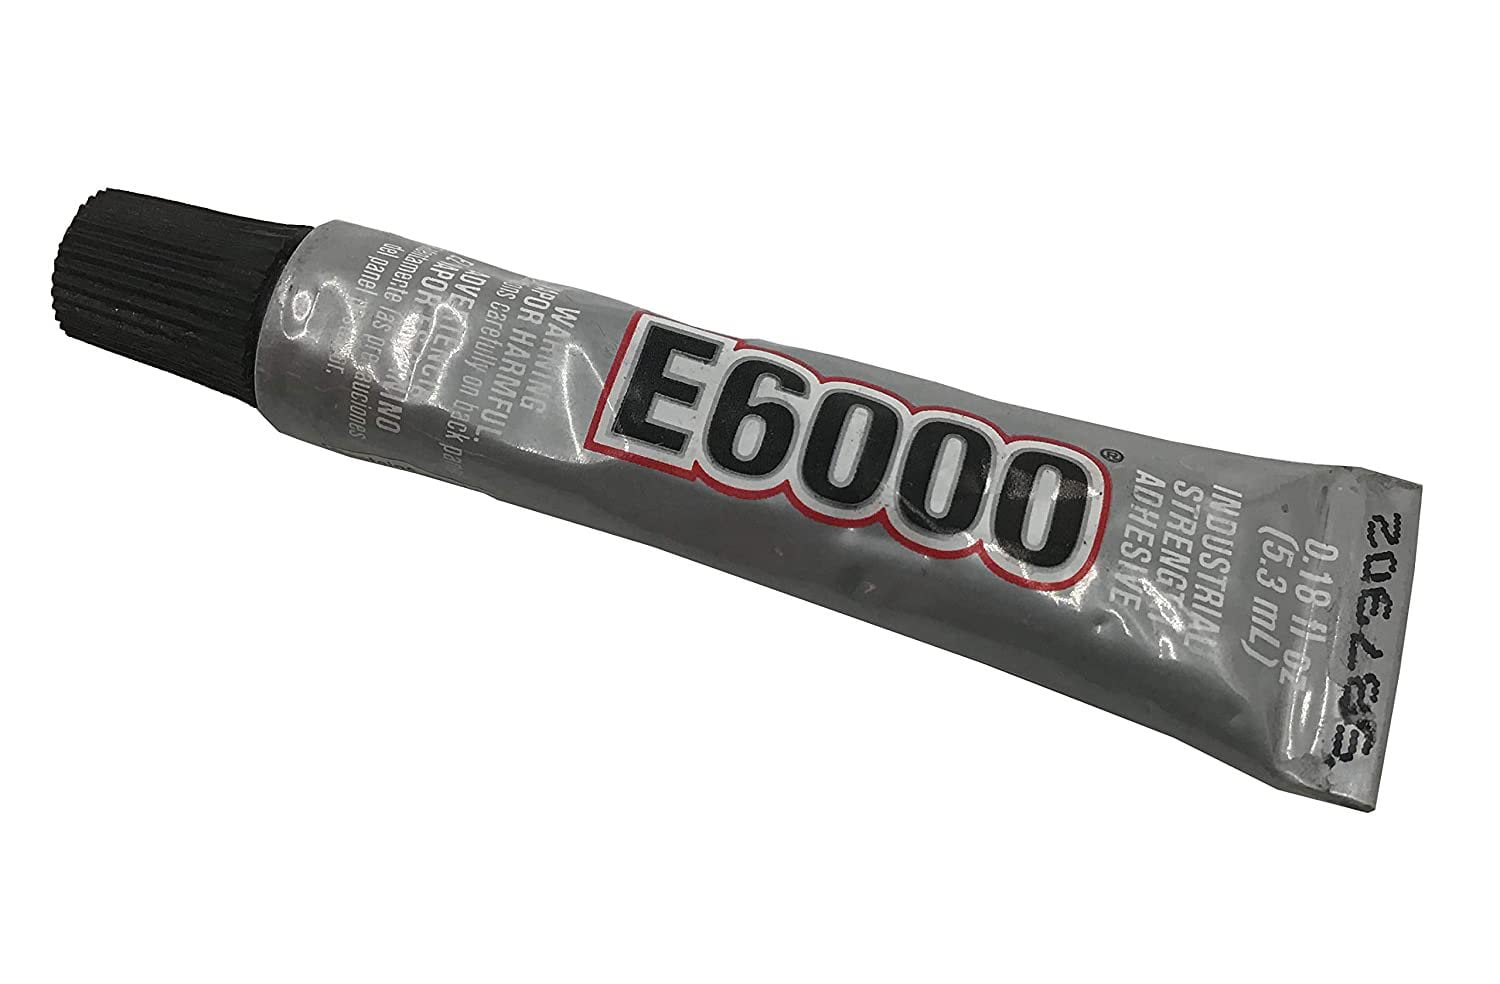 E6000 - Clear Silicon Glue - 3.7 fl. oz.